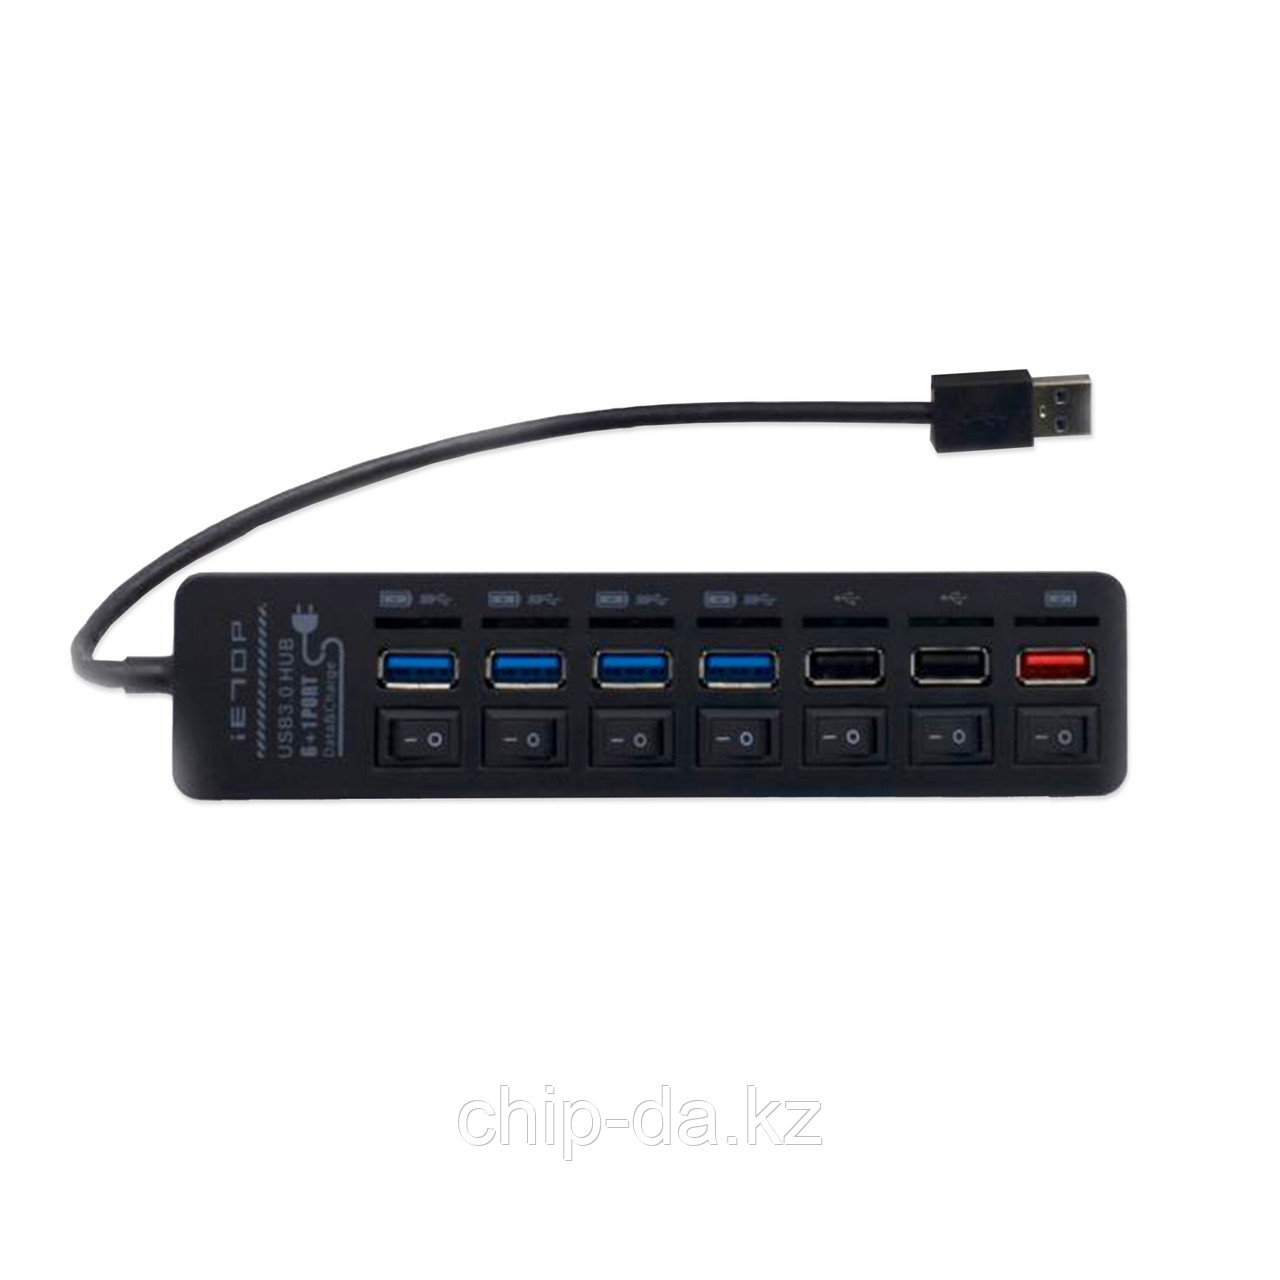 USB 3.0-разветвитель iETOP U3-26, 7 портов